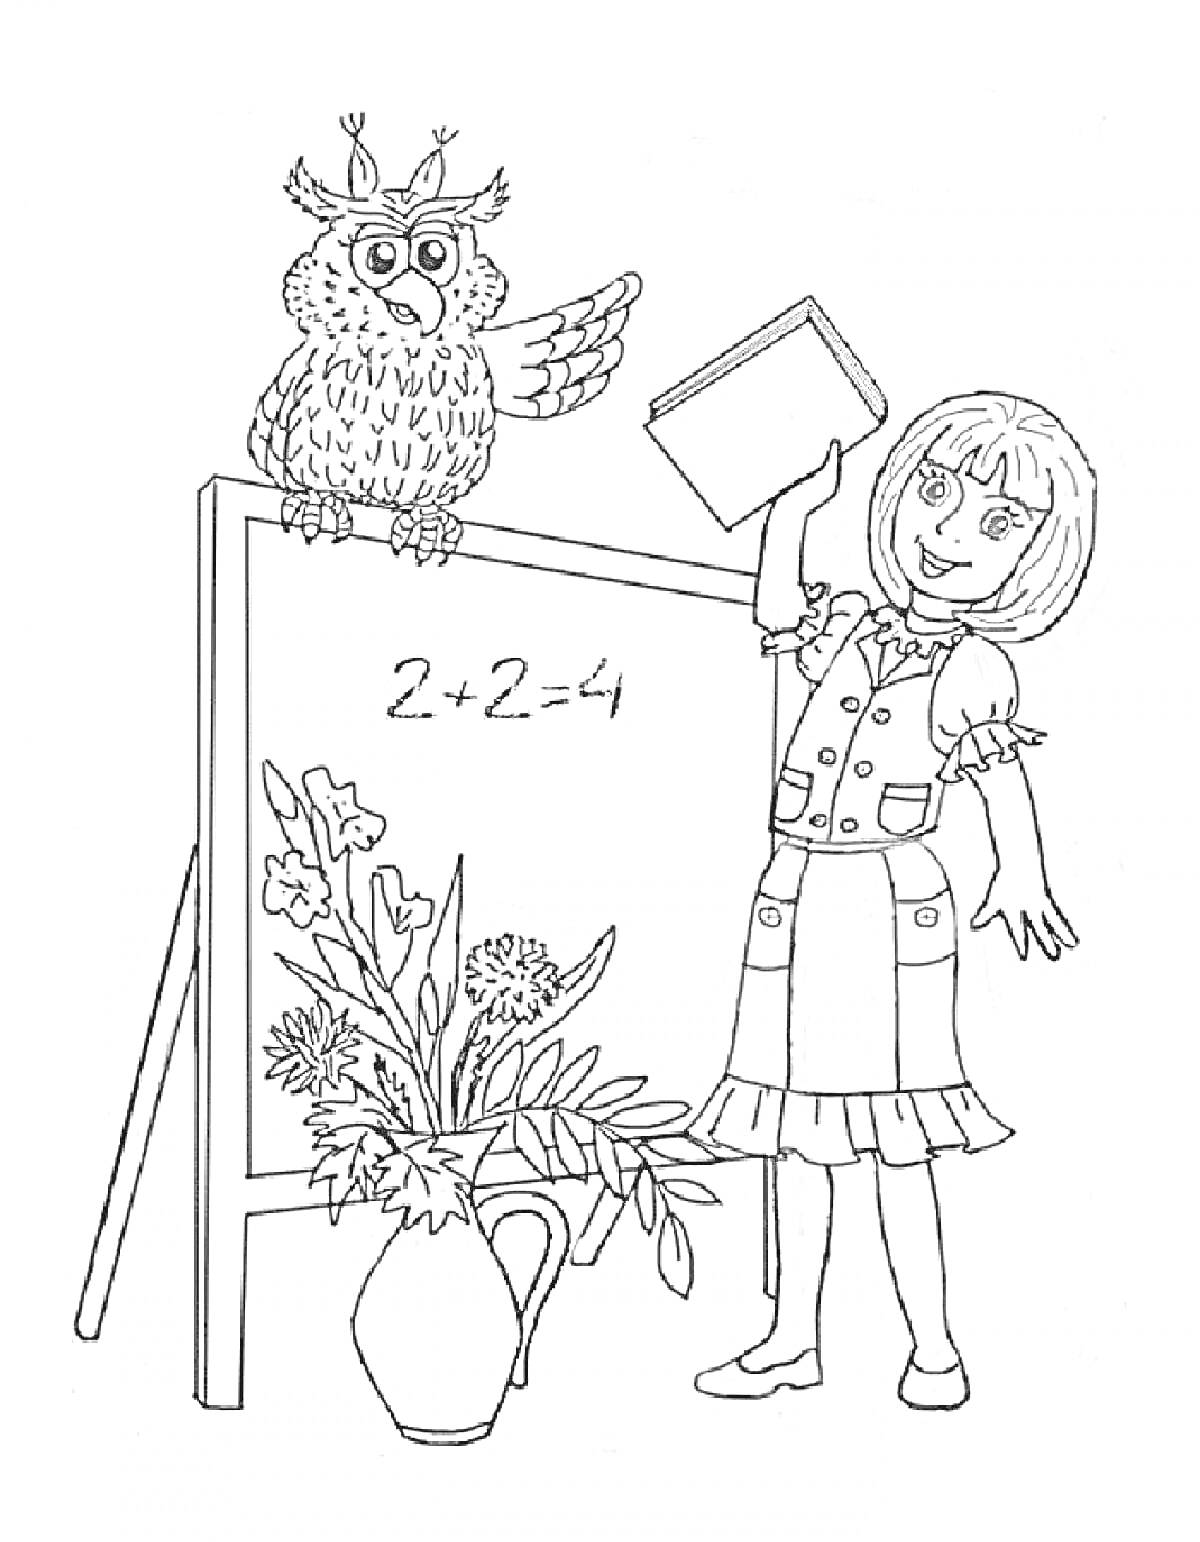 Раскраска Девочка с книгой, доска с уравнением, сова и ваза с цветами